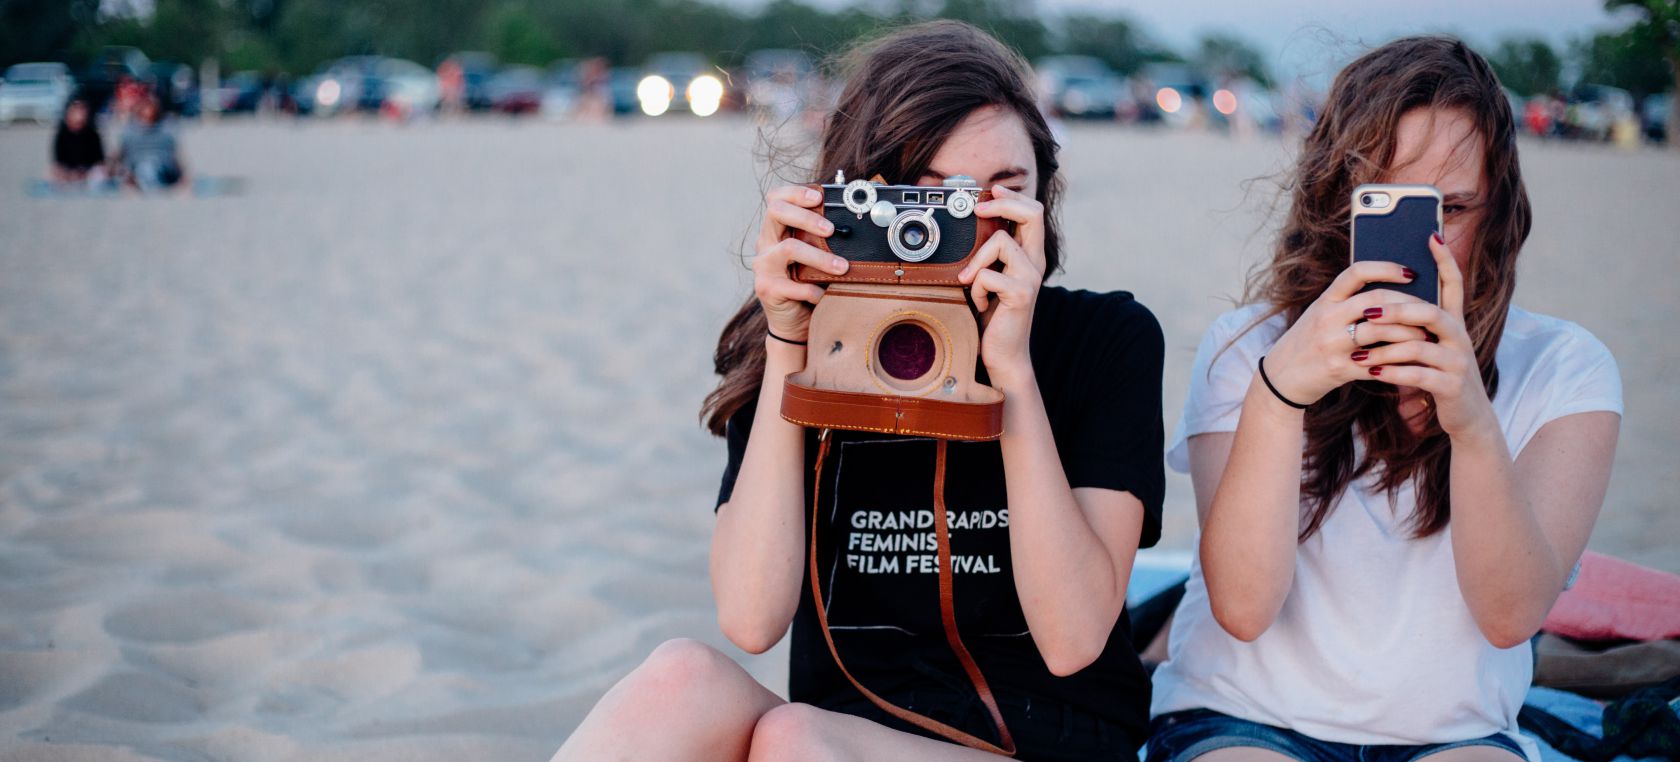 57 frases inspiradoras sobre el verano que quedan genial en Instagram